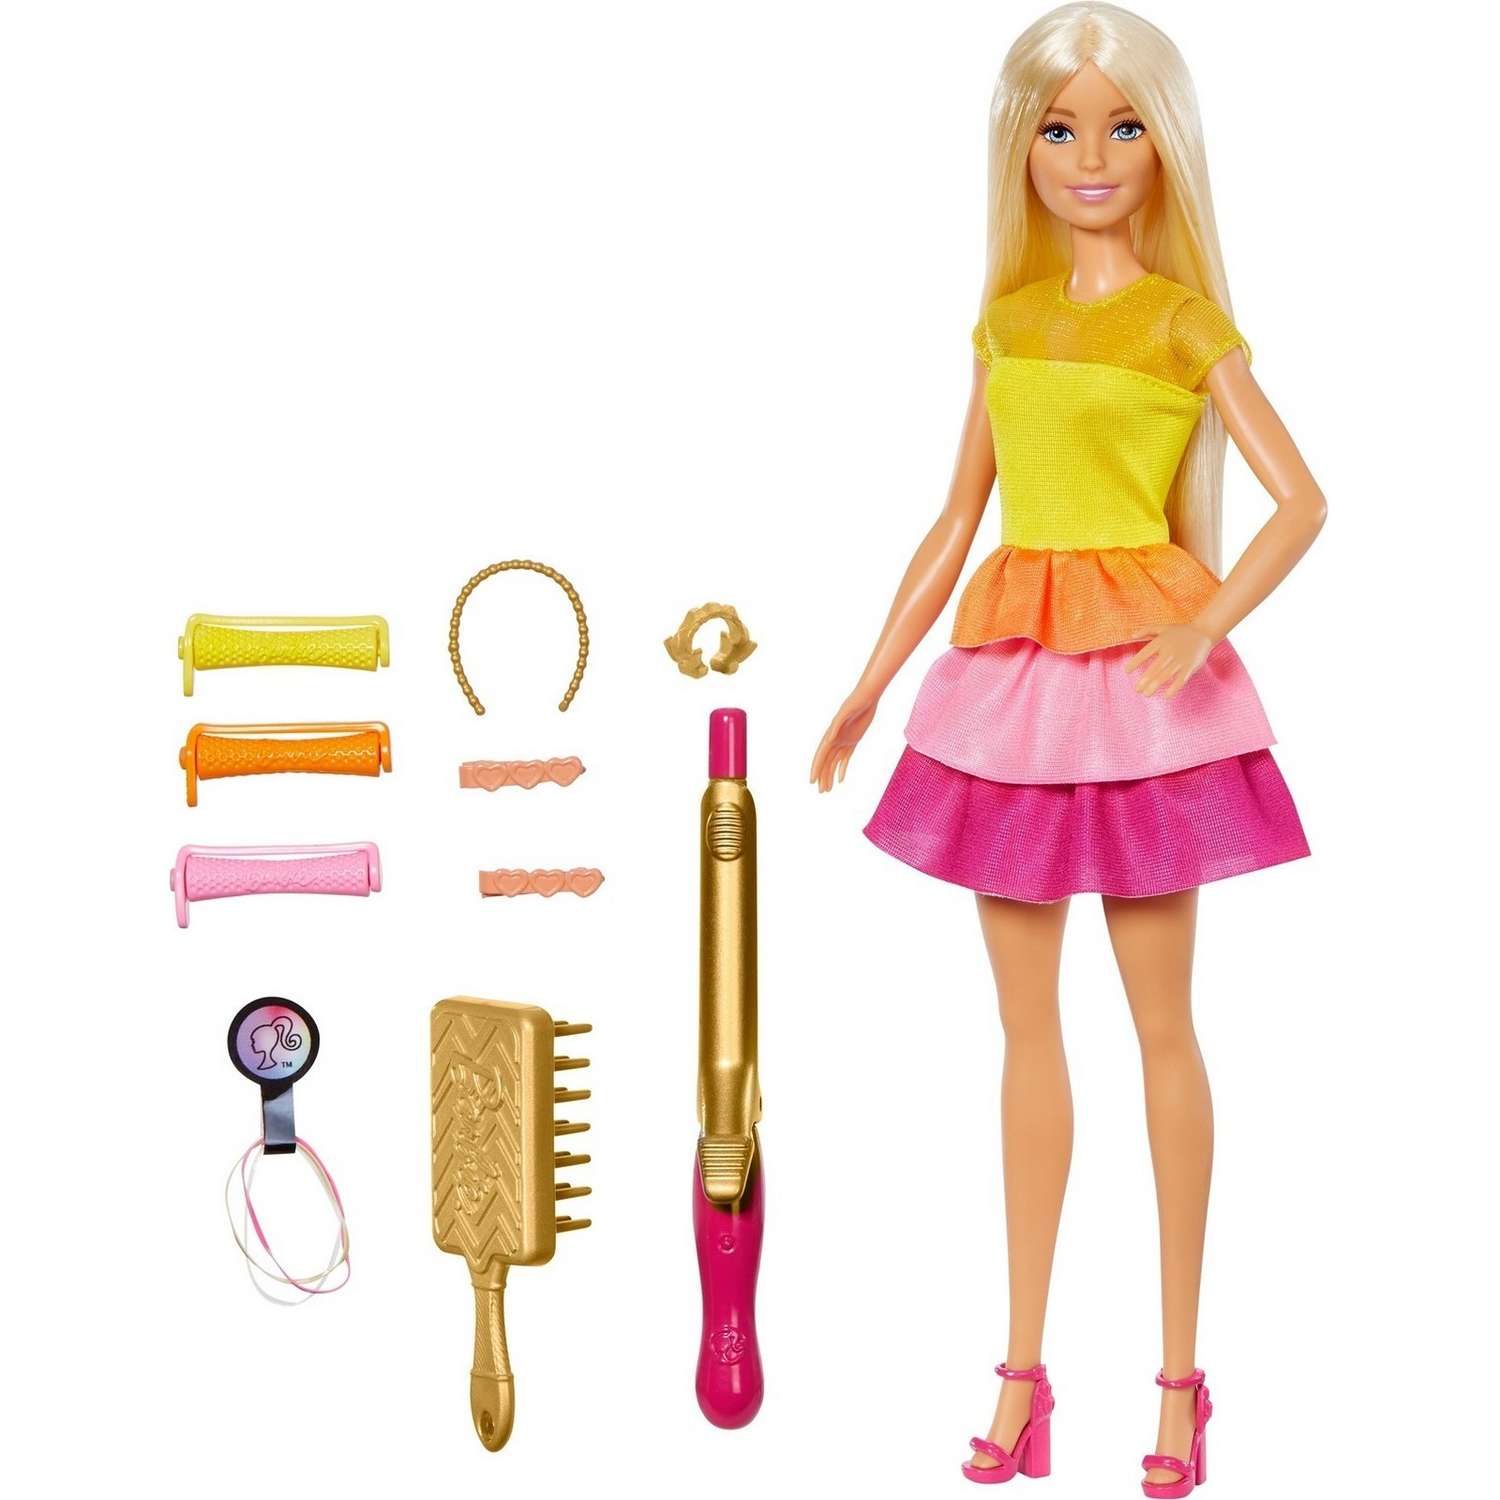 Игрушки и игры Barbie: отзывы